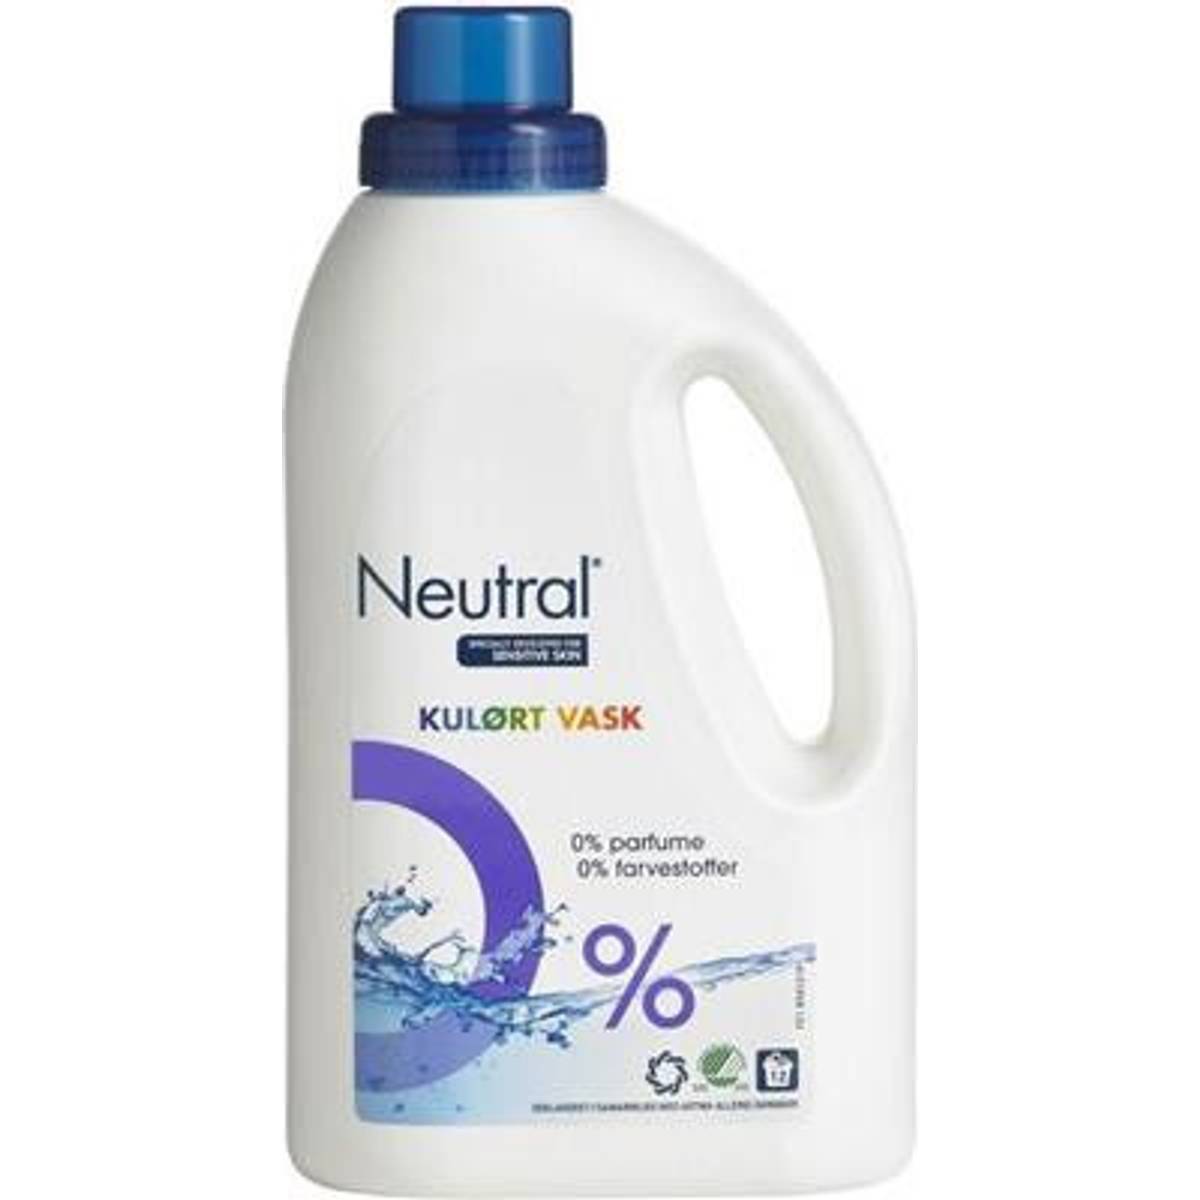 Neutral vaskemiddel • Find den billigste pris hos PriceRunner nu »